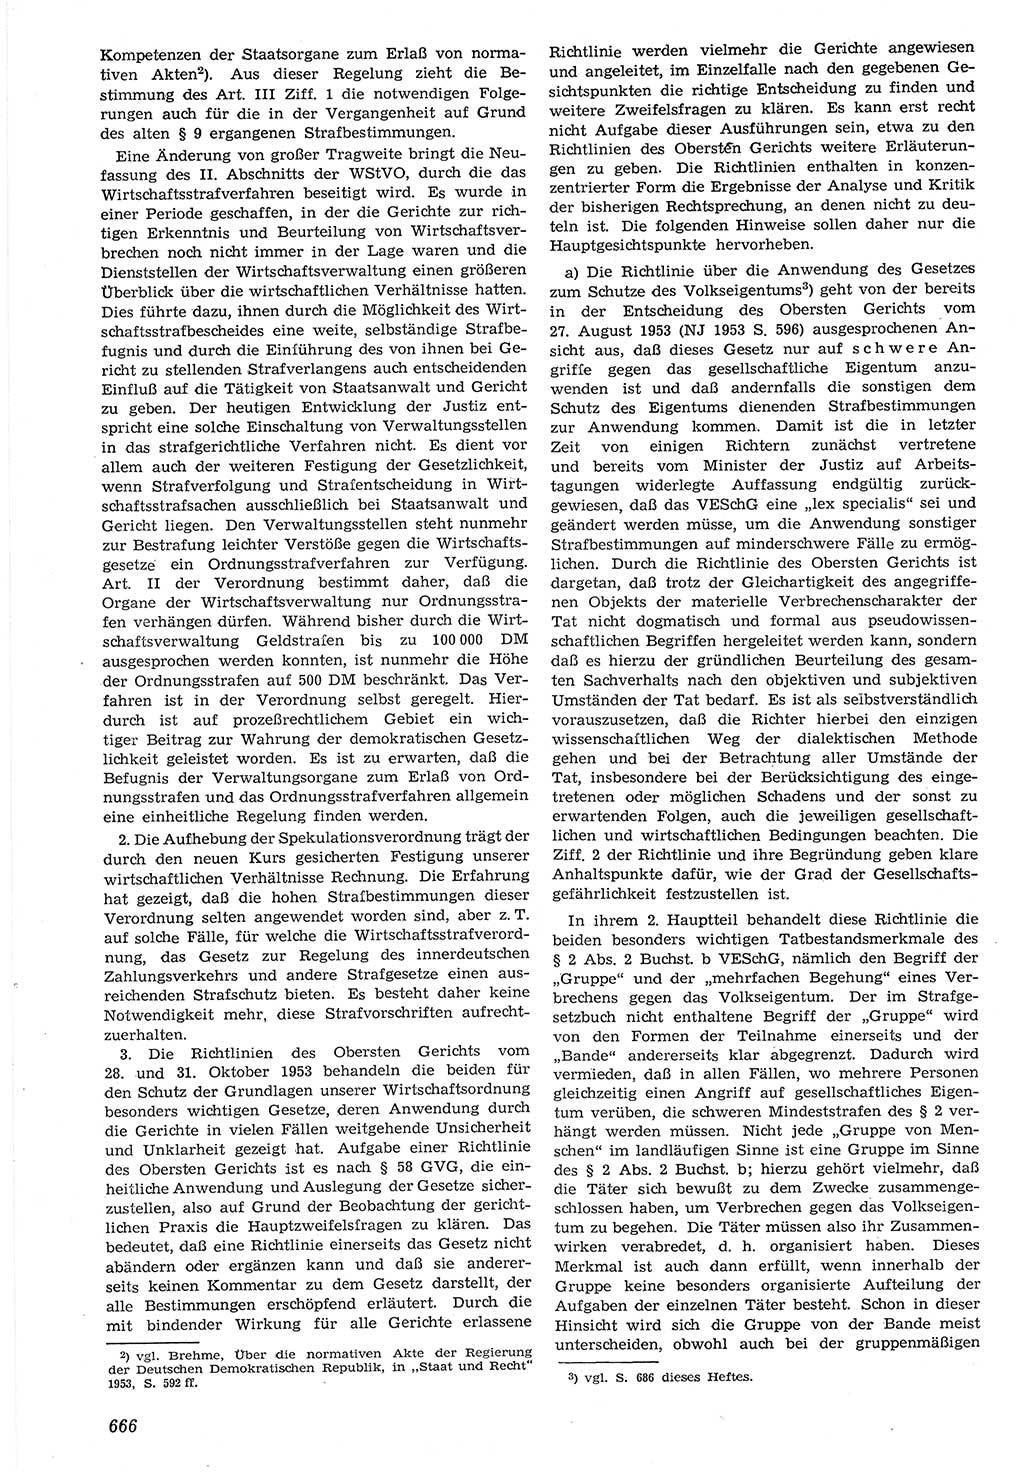 Neue Justiz (NJ), Zeitschrift für Recht und Rechtswissenschaft [Deutsche Demokratische Republik (DDR)], 7. Jahrgang 1953, Seite 666 (NJ DDR 1953, S. 666)